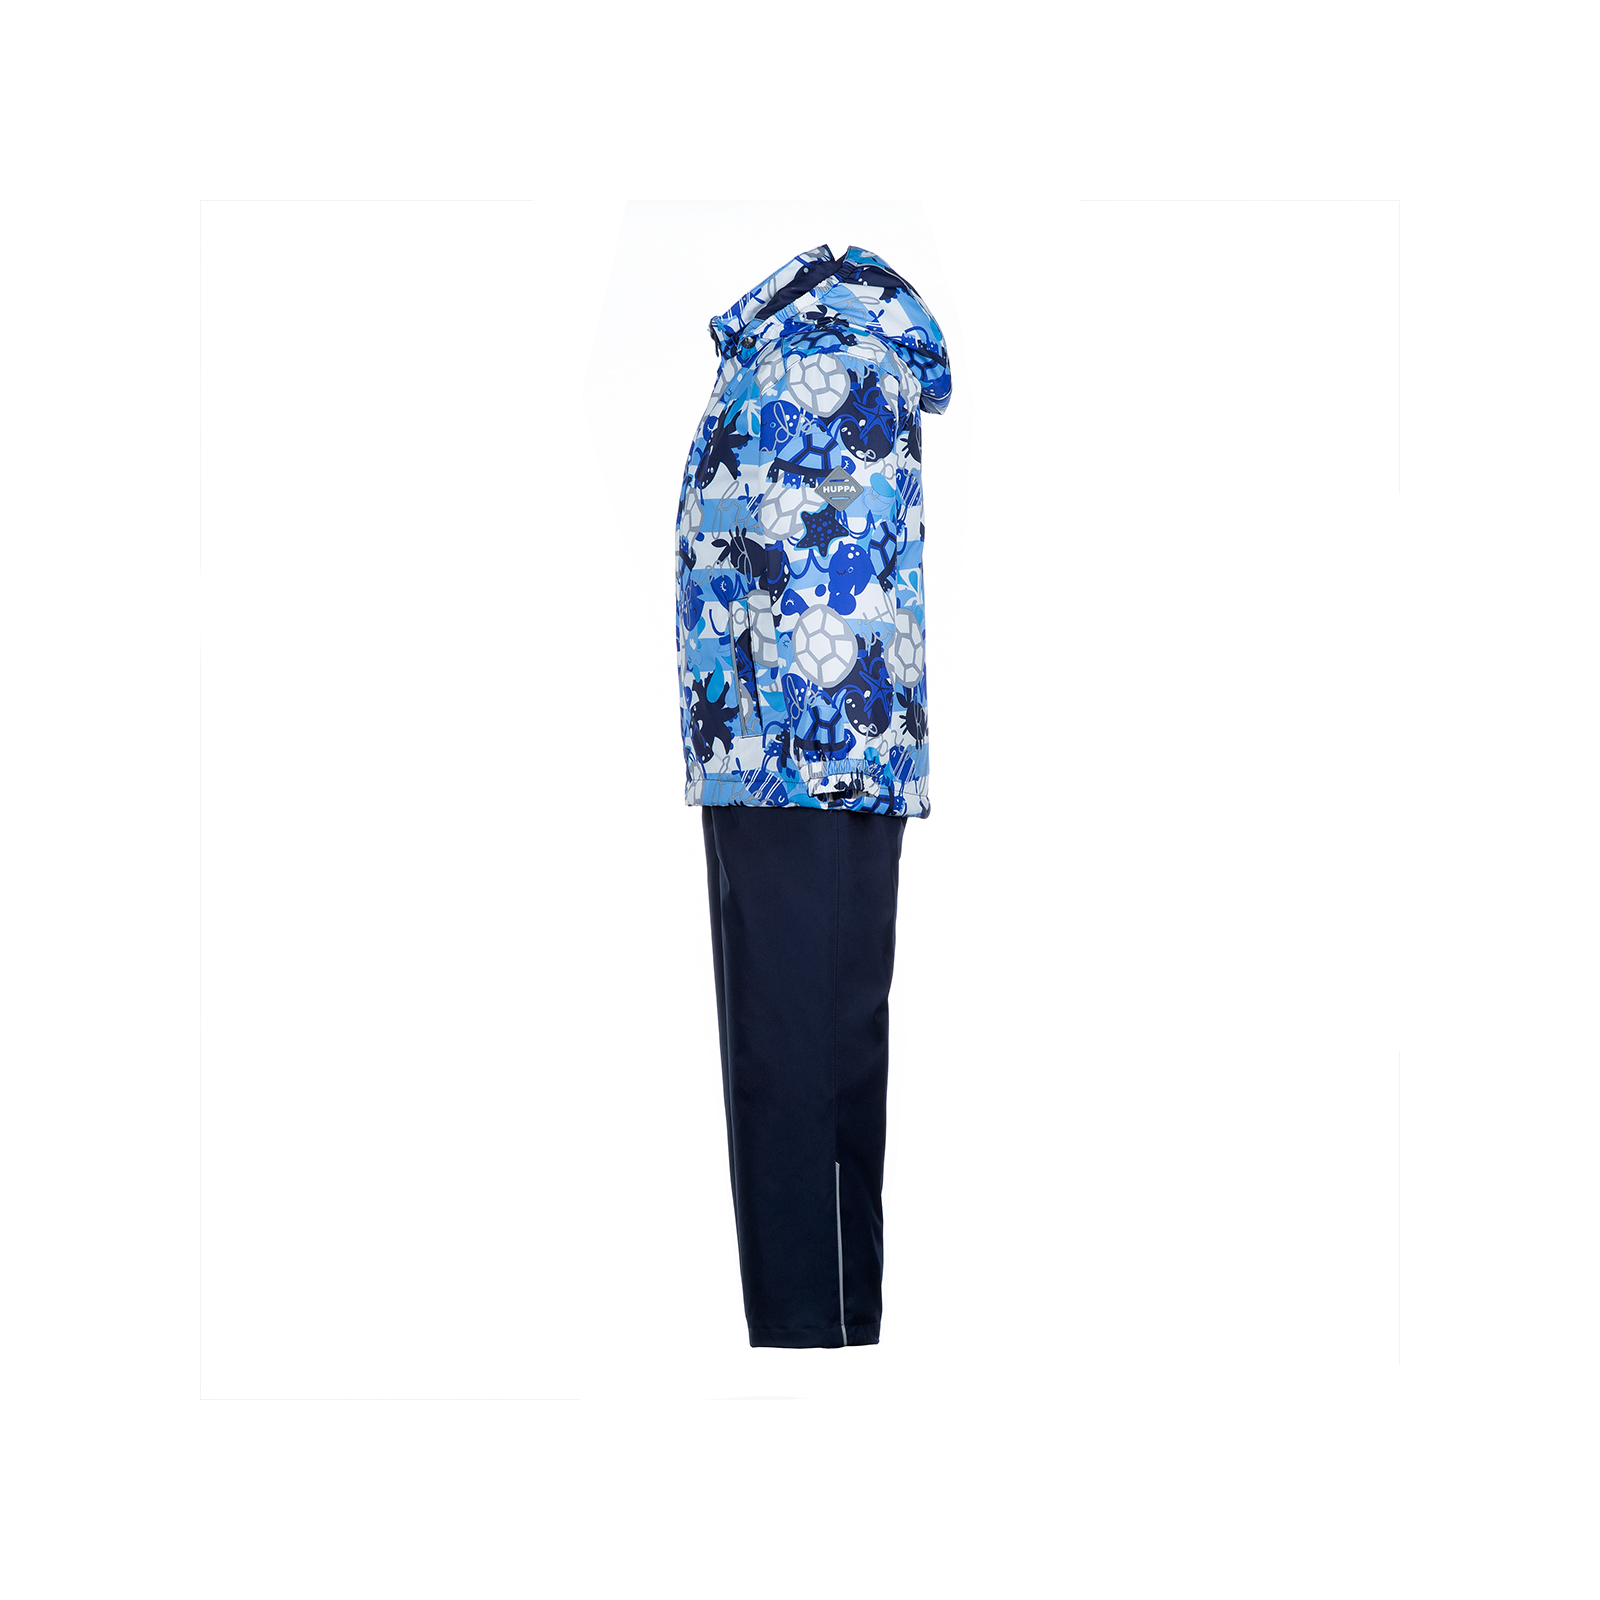 Комплект верхней одежды Huppa YOKO 41190014 тёмно-синий с принтом/тёмно-синий 116 (4741468760414) изображение 2